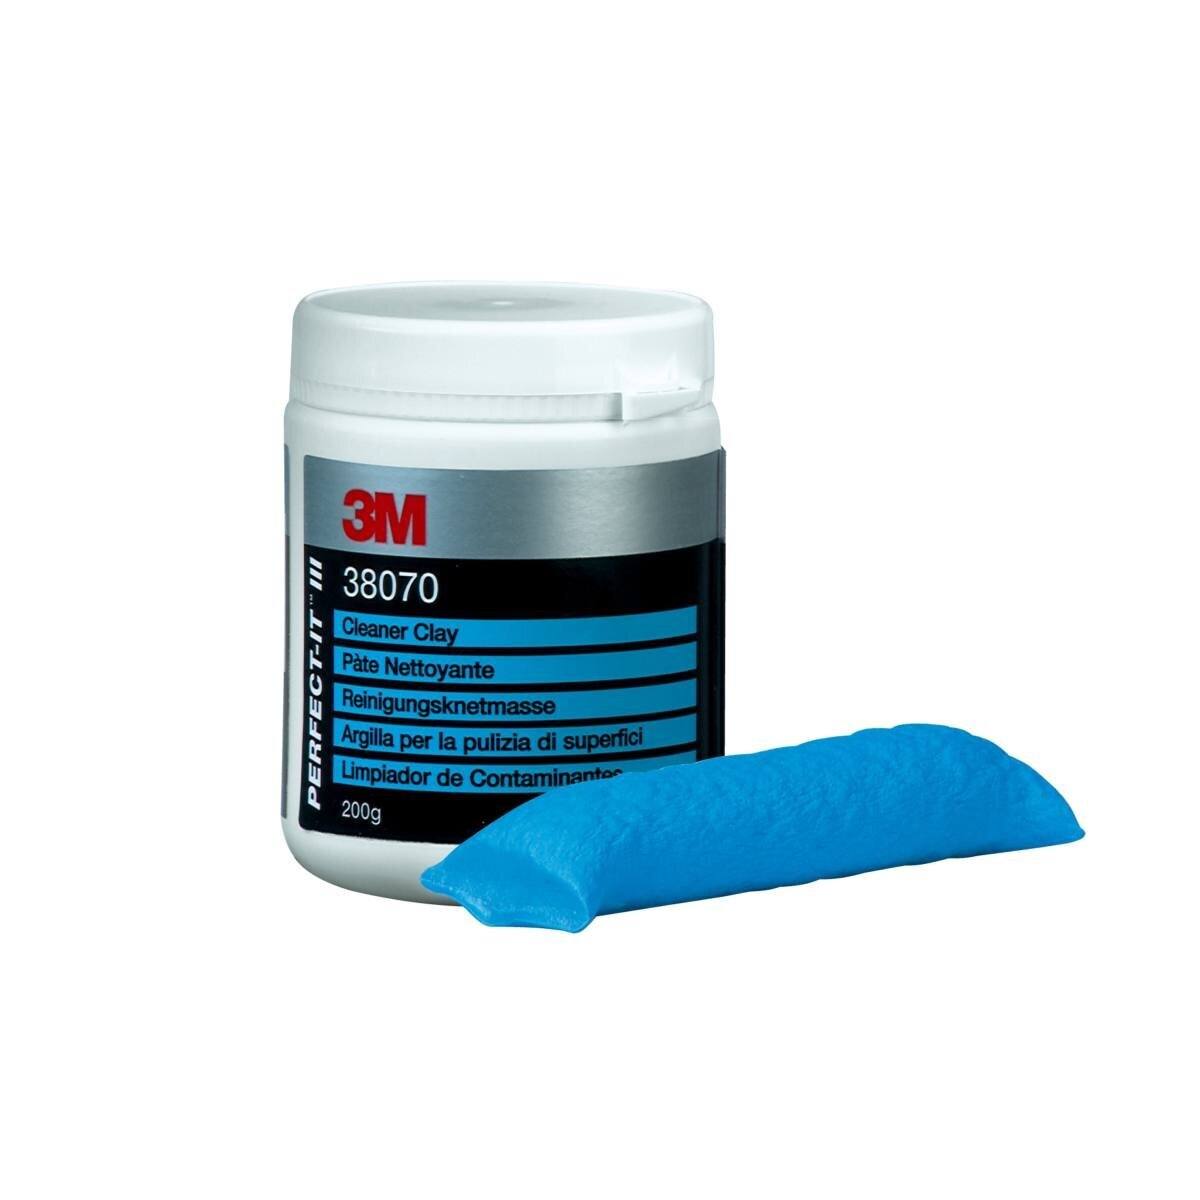 3M Perfect-It III Reinigingsplamuur, blauw, 200 g #38070